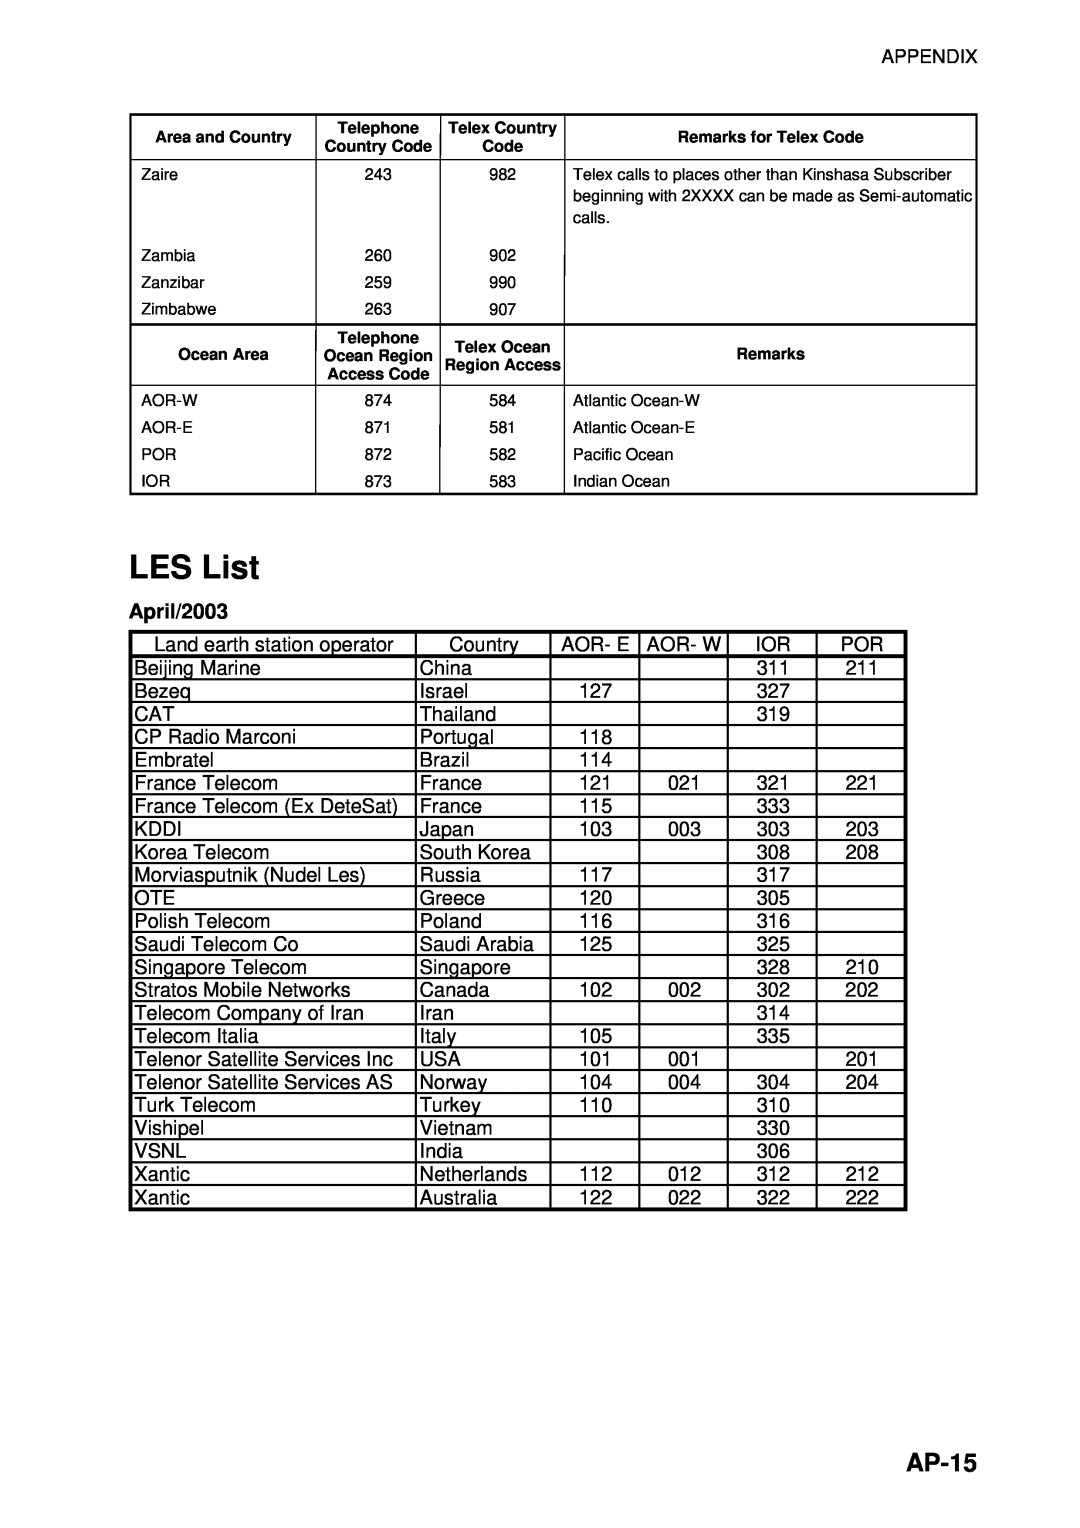 Furuno 16 manual LES List, AP-15, April/2003 